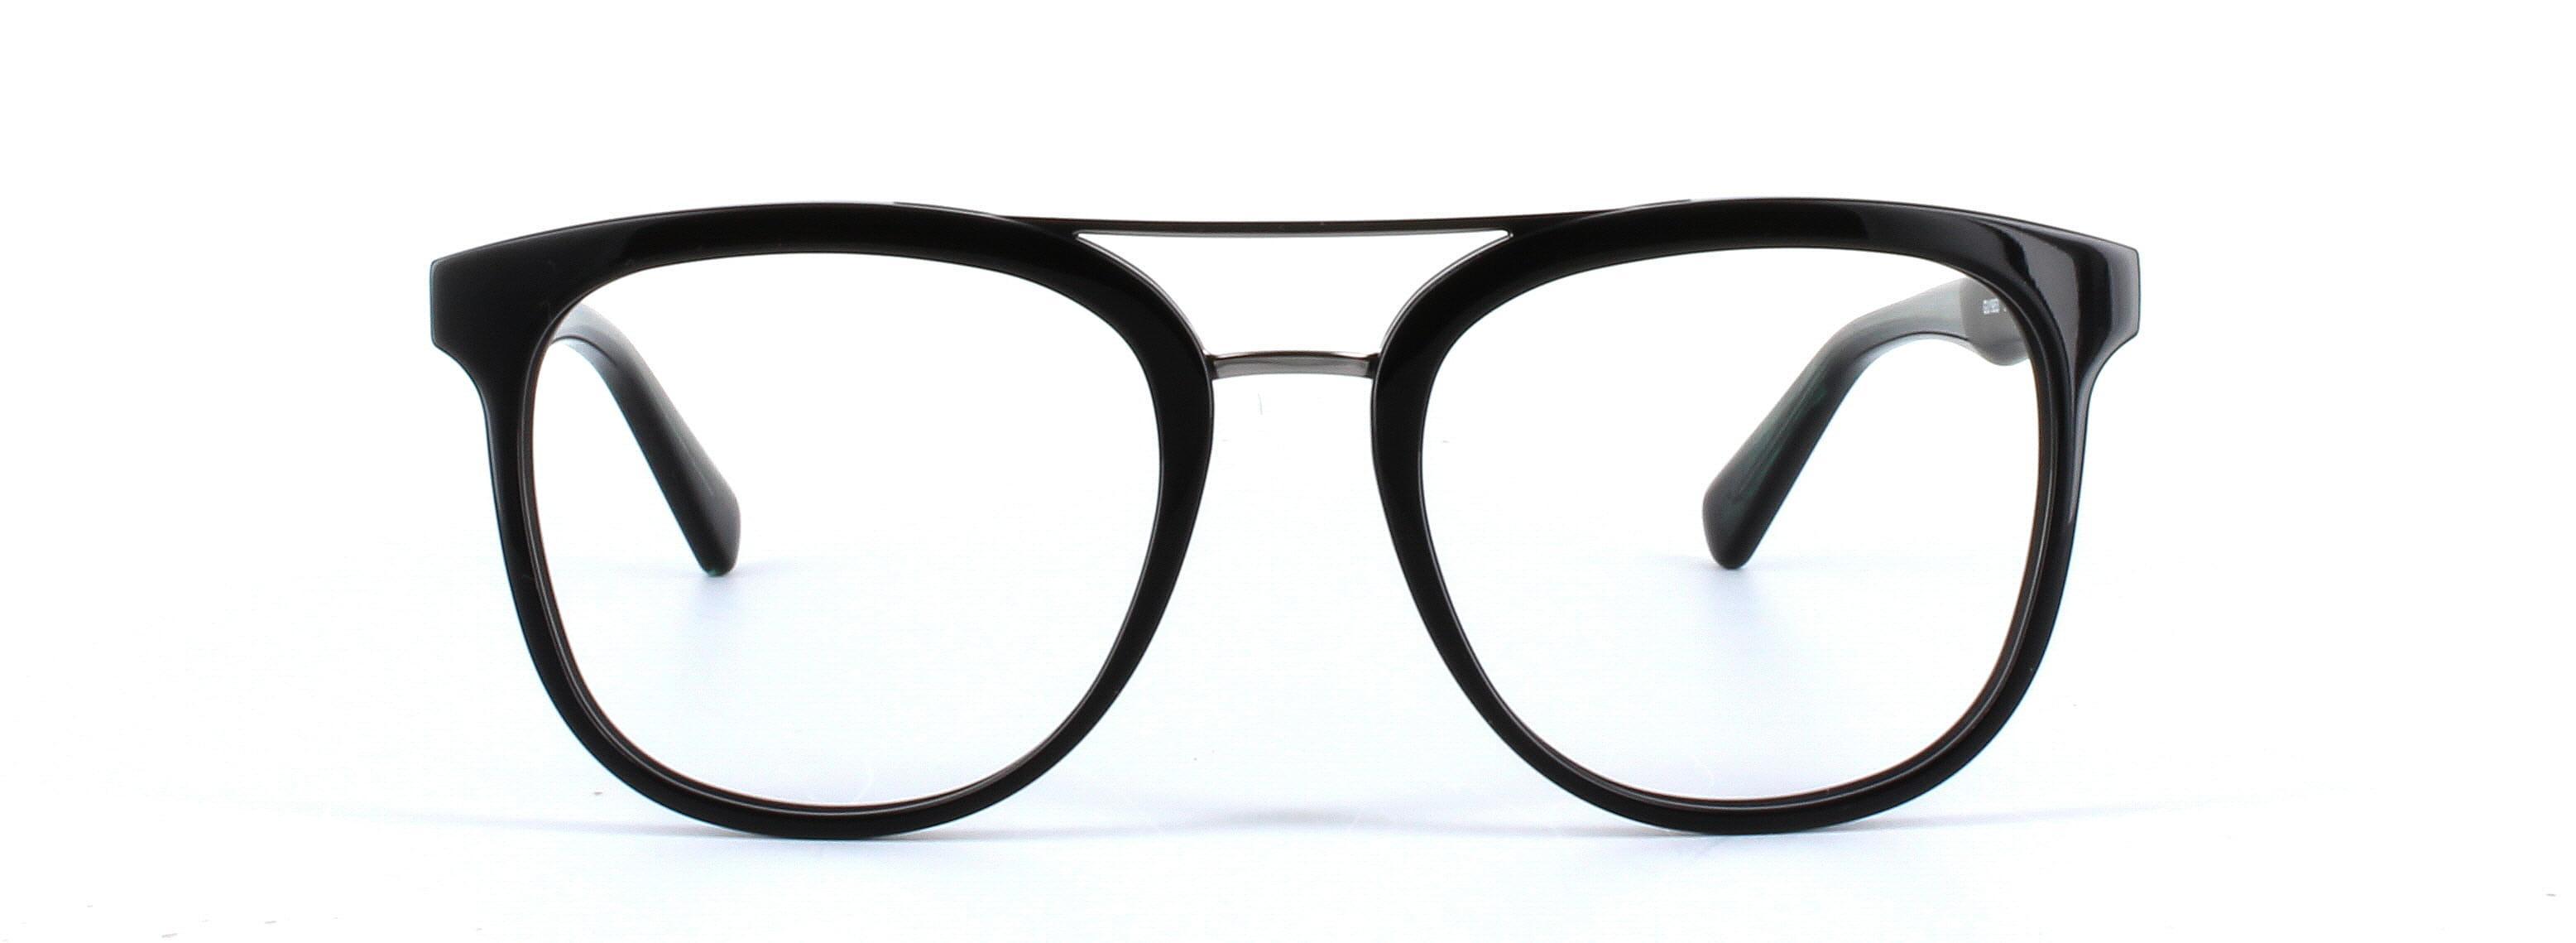 GUESS (GU1953-001) Black Full Rim Square Acetate Glasses - Image View 5